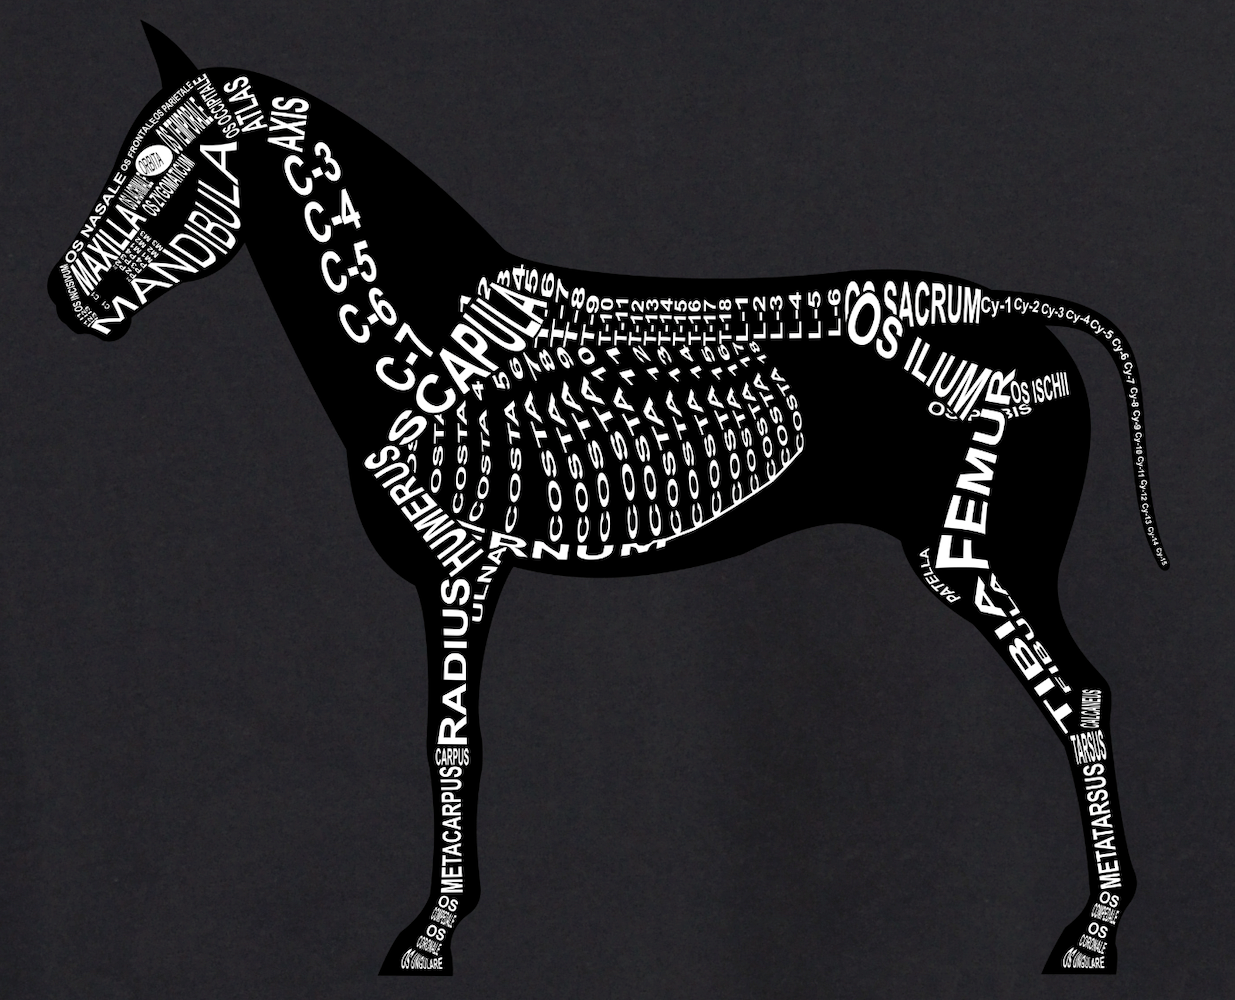 Motiv Pferd: Skelett mit anatomischen Bezeichnungen der Knochen für Tierarzt und Tiermedizin-Student - Wort Anatomie